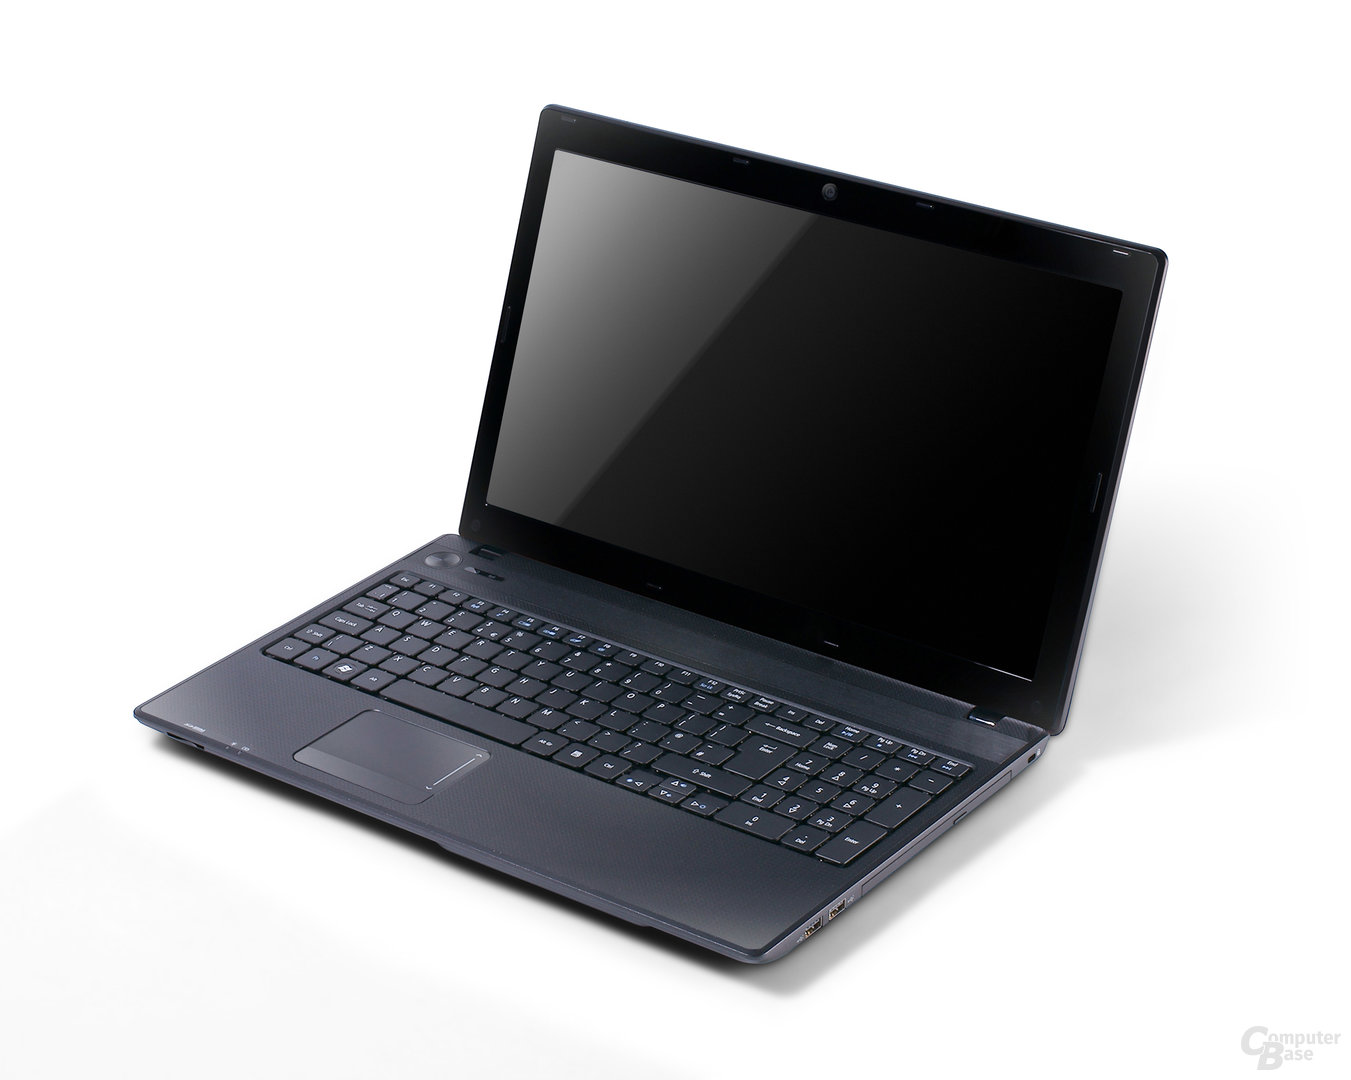 Acer Aspire 5253 in schwarz